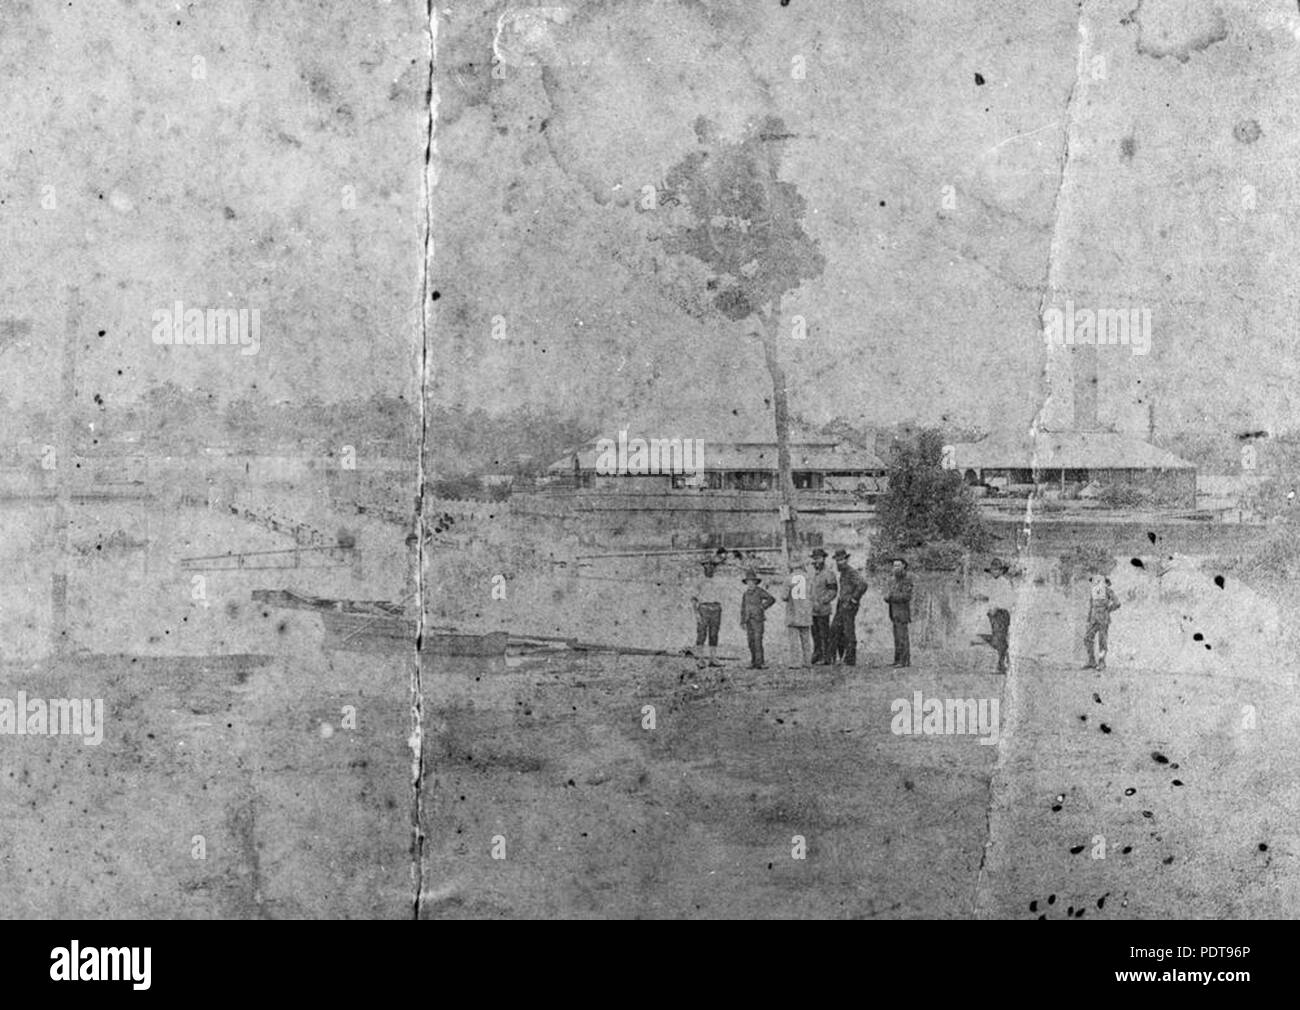 264 1 391289 StateLibQld Bourbong Street mostrando el gas funciona durante las inundaciones de 1890 Foto de stock